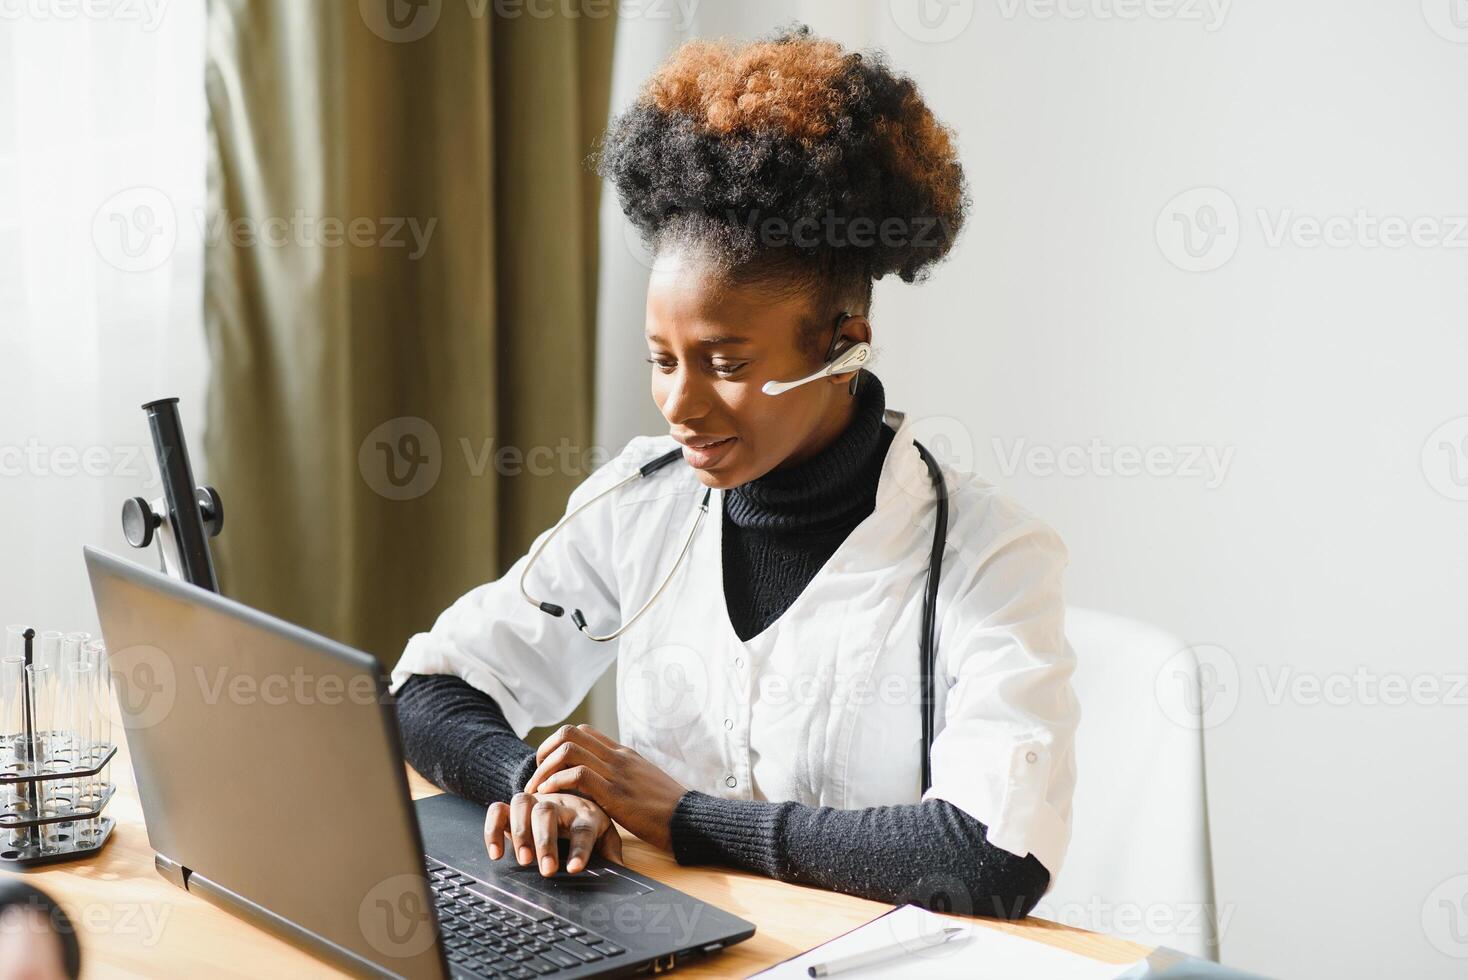 sonriente africano americano hembra médico gp usa blanco médico Saco utilizando ordenador portátil computadora a lugar de trabajo da remoto en línea consulta, trabajando en ordenador personal, consultante paciente en Internet telemedicina charla foto